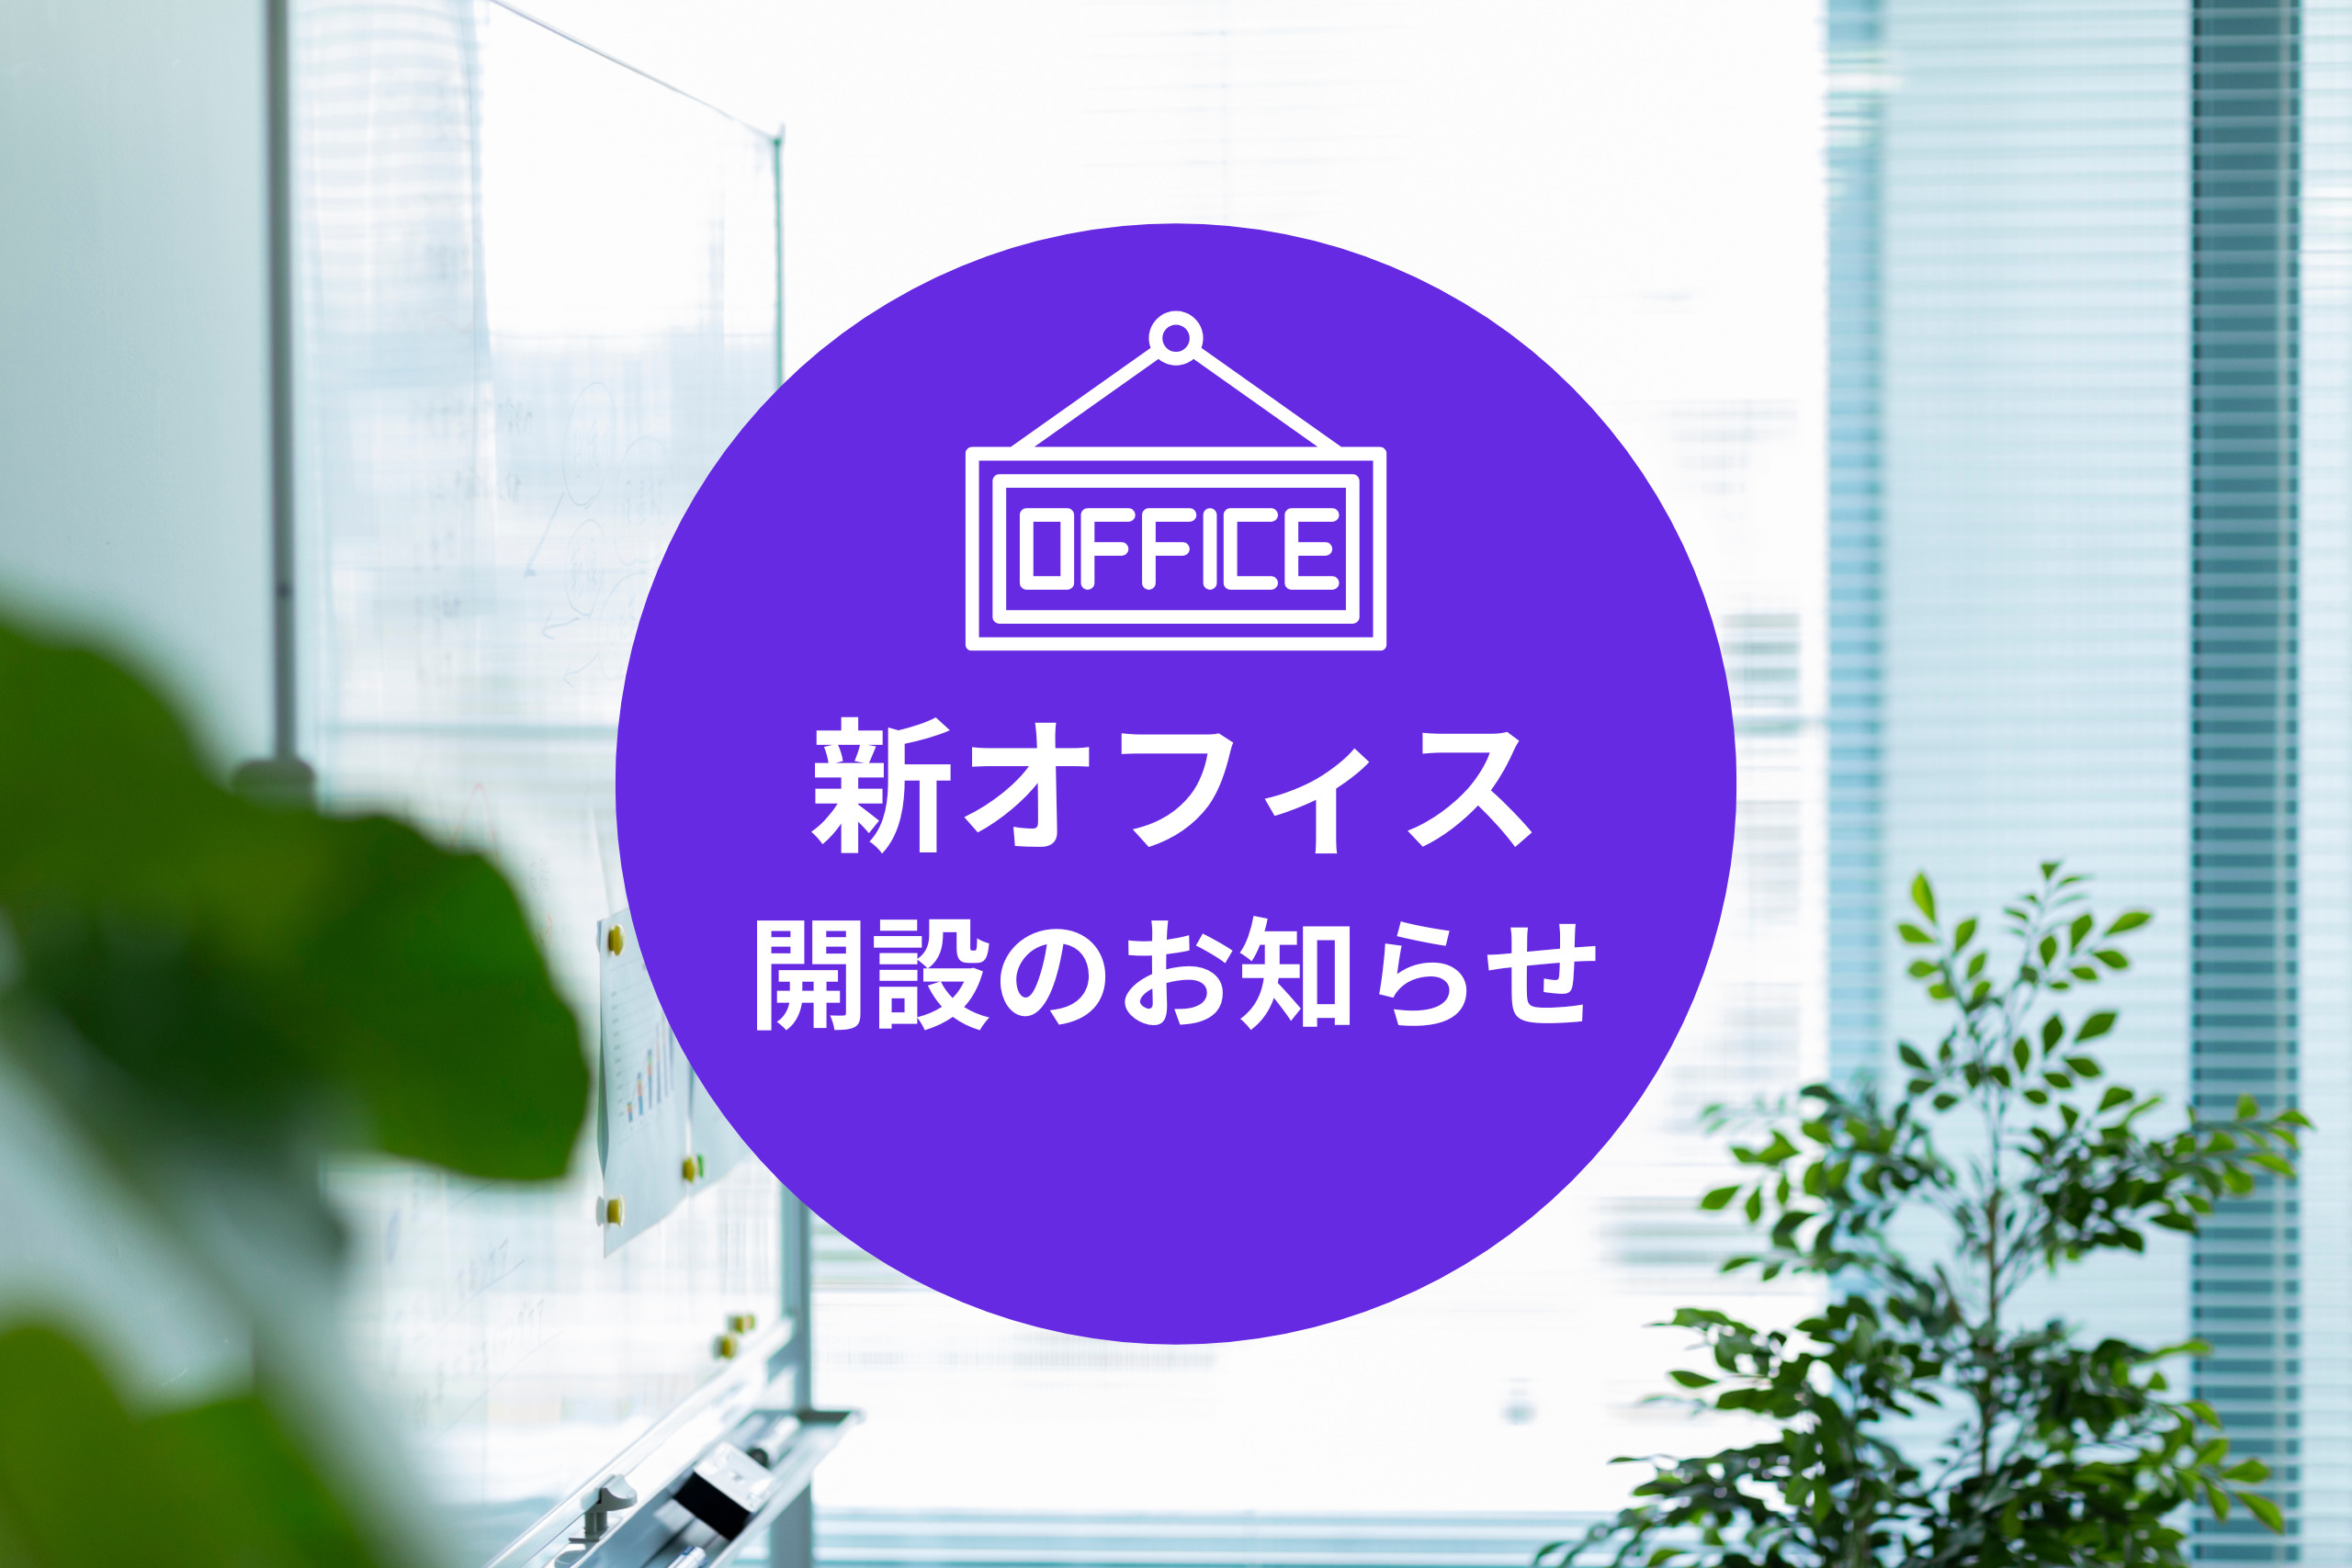 【お知らせ】新宿サテライトオフィス開設のご案内